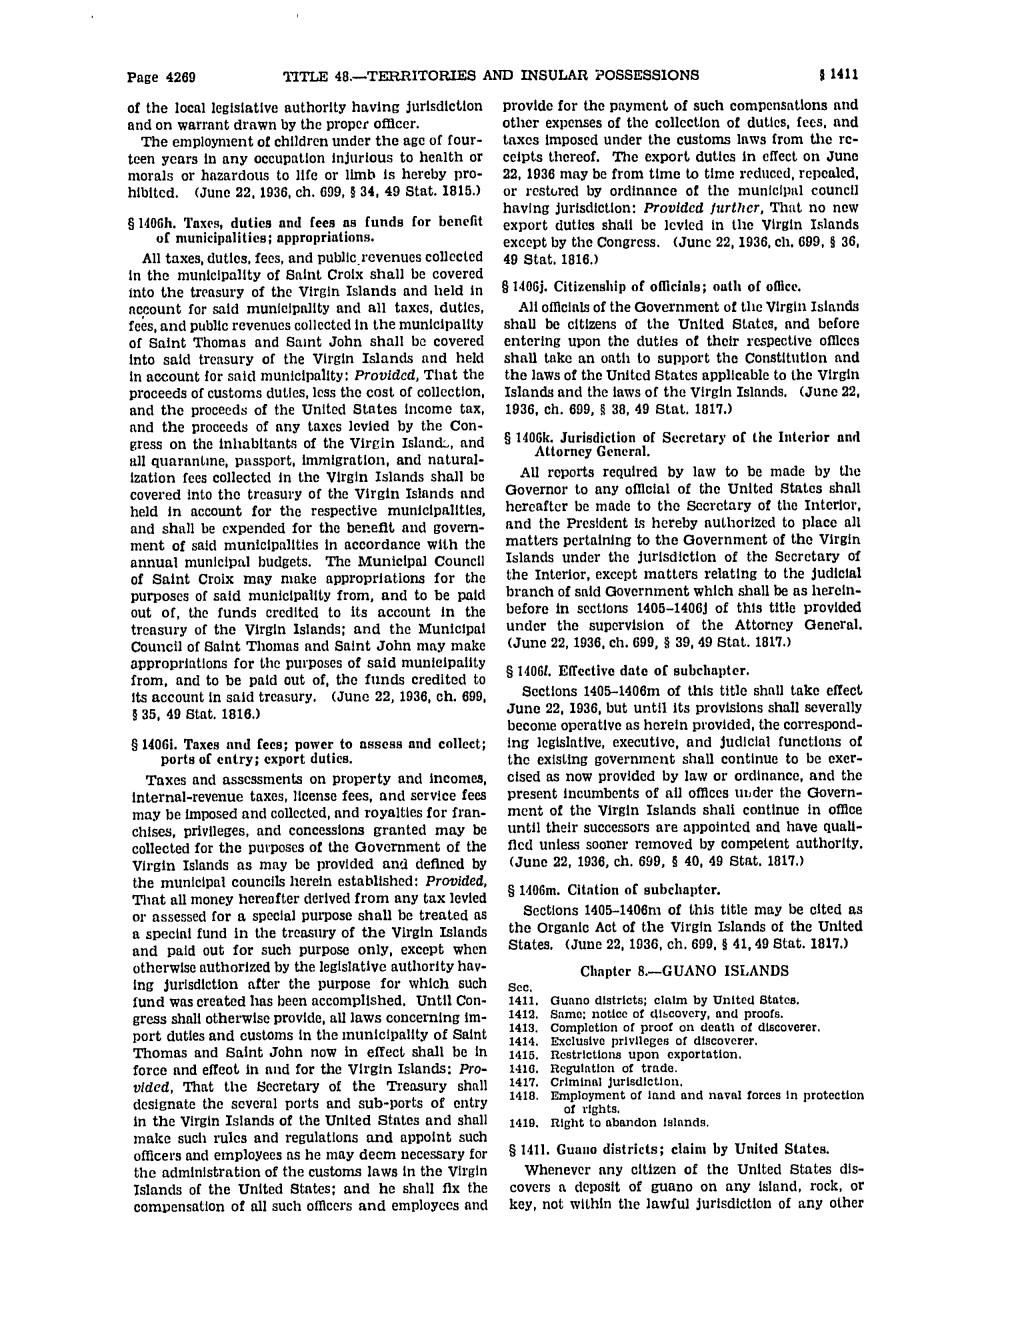 United States Code: Guano Islands, 48 U.S.C. §§ 1411-1419 (1940)